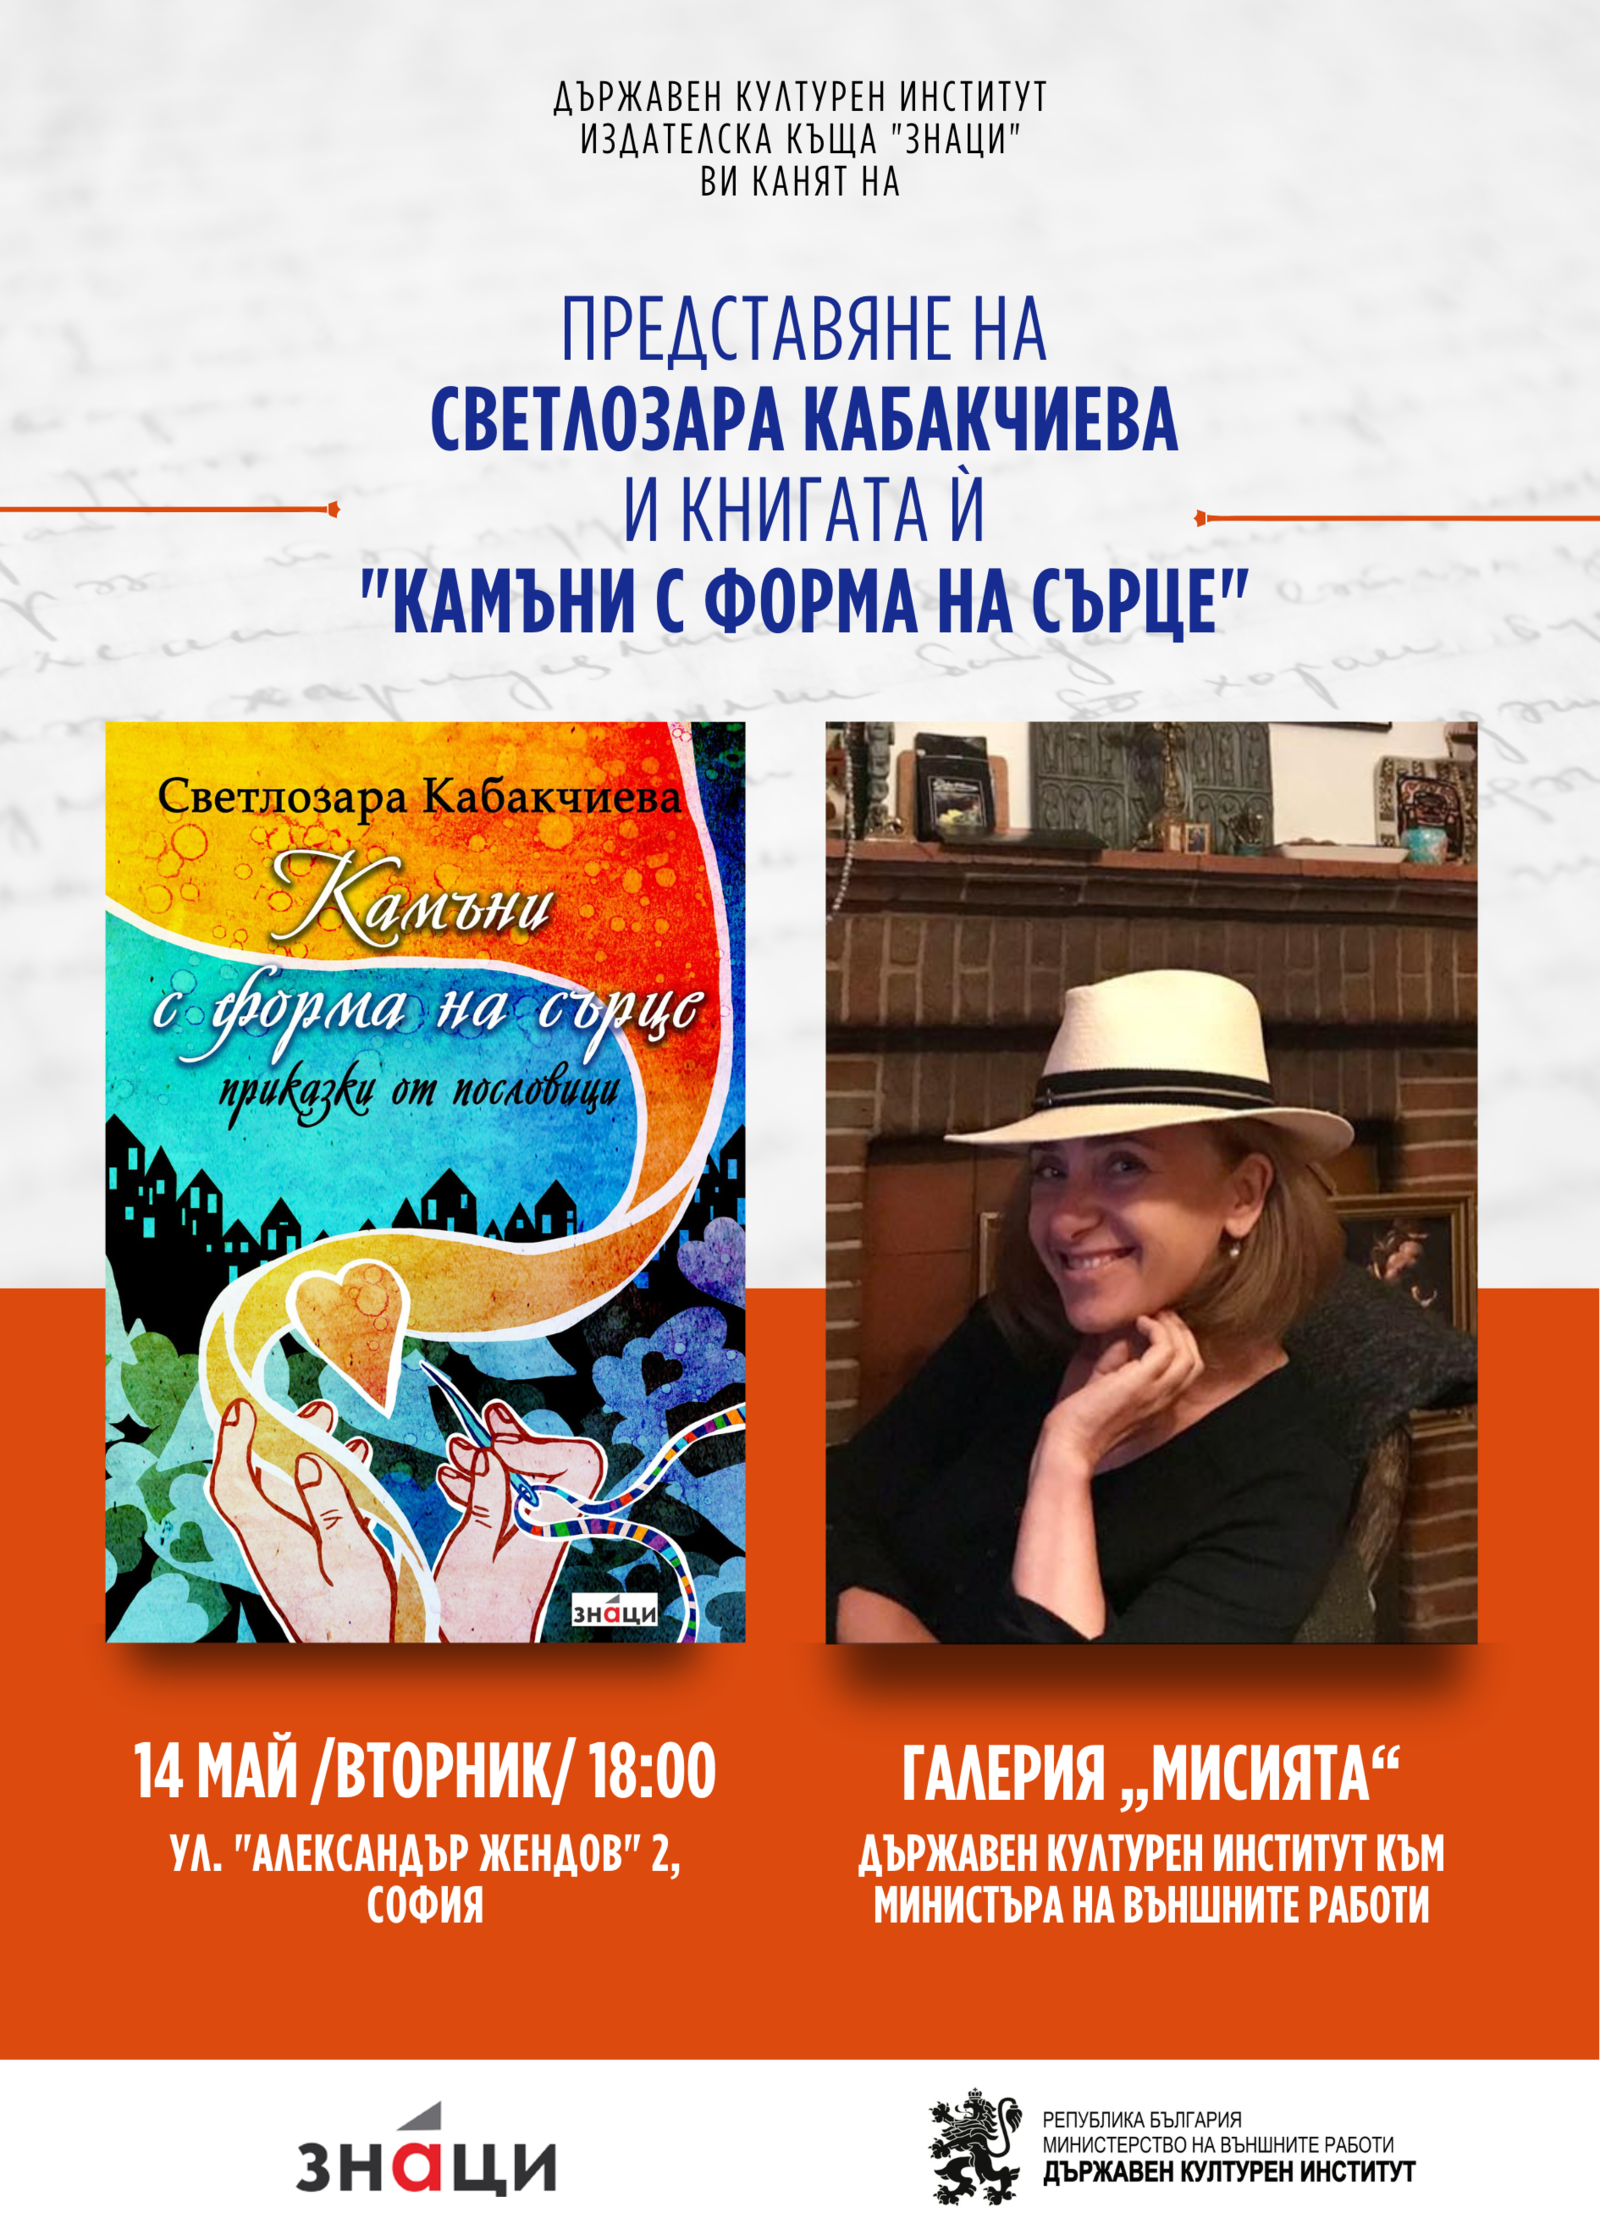 Програмата „Пишещите дипломати“ продължава с представянето на книгата на Светлозара Кабакчиева - „Камъни с форма на сърце“